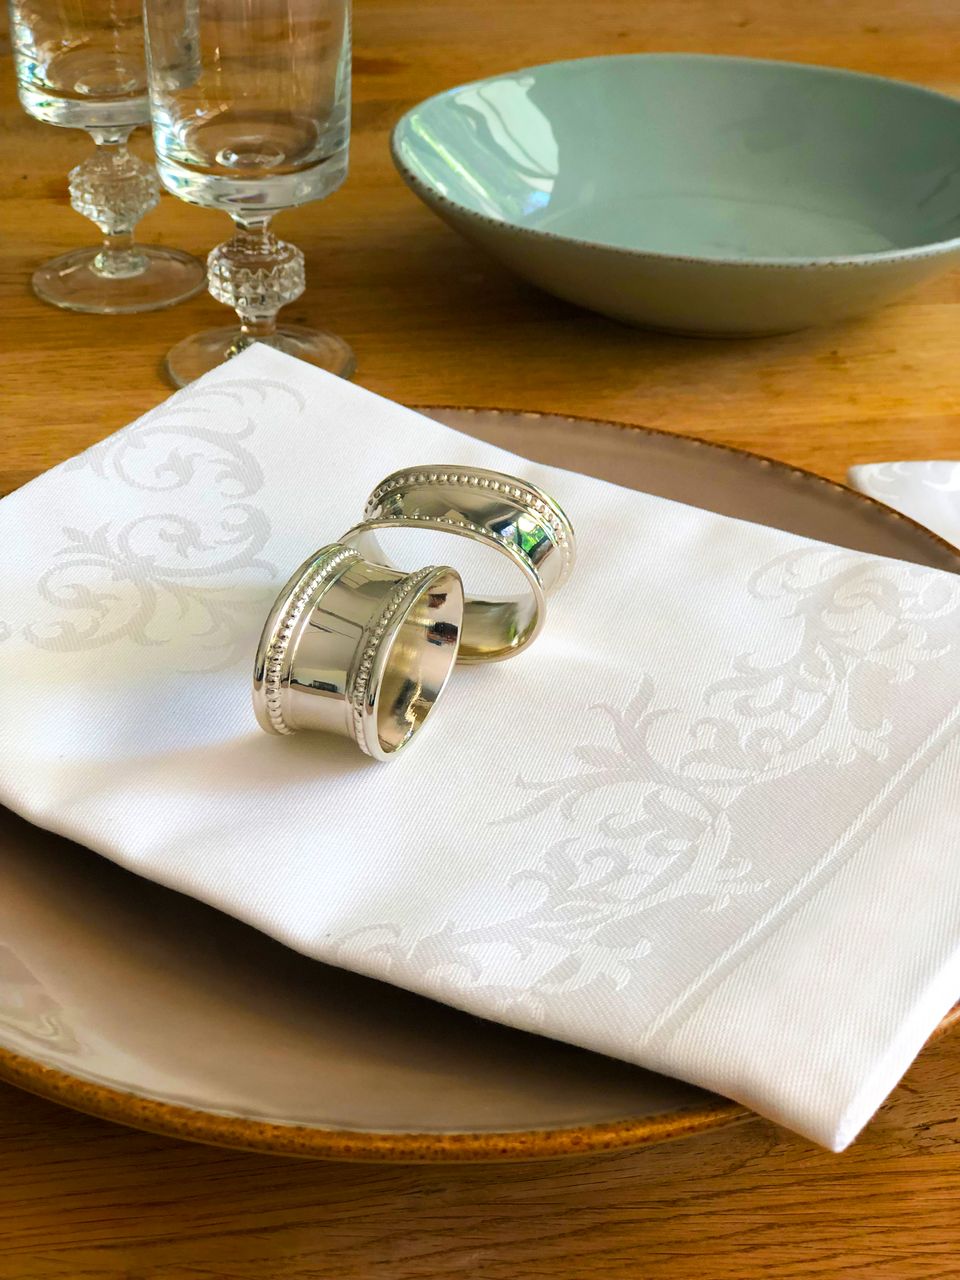 Damast-Tischdecken und Damast-Servietten wirken besonders elegant